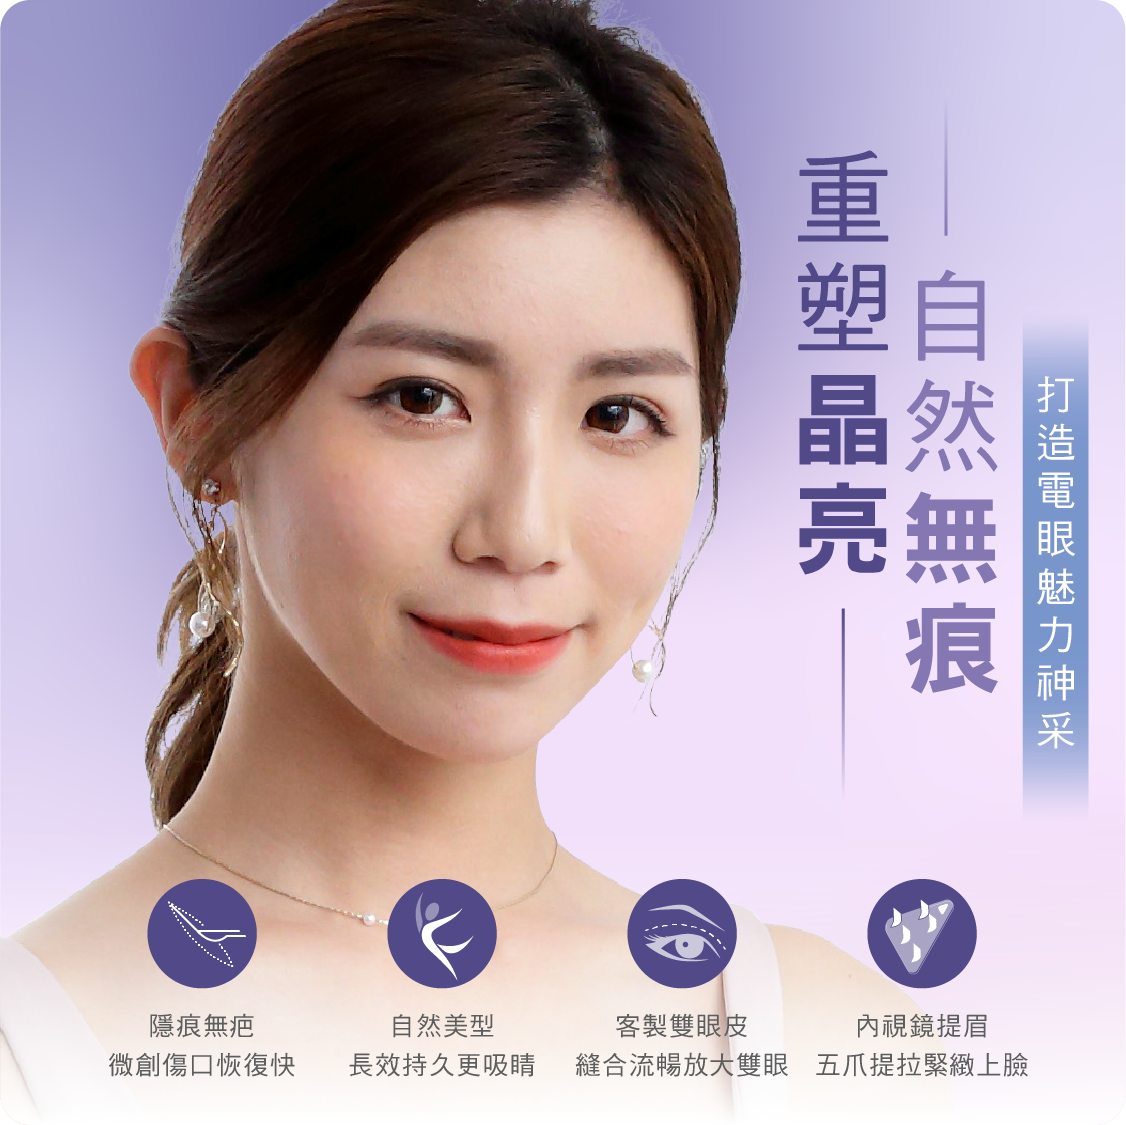 台北桃園晶華醫美進行內視鏡隱痕提眉及縫雙眼皮手術的優勢